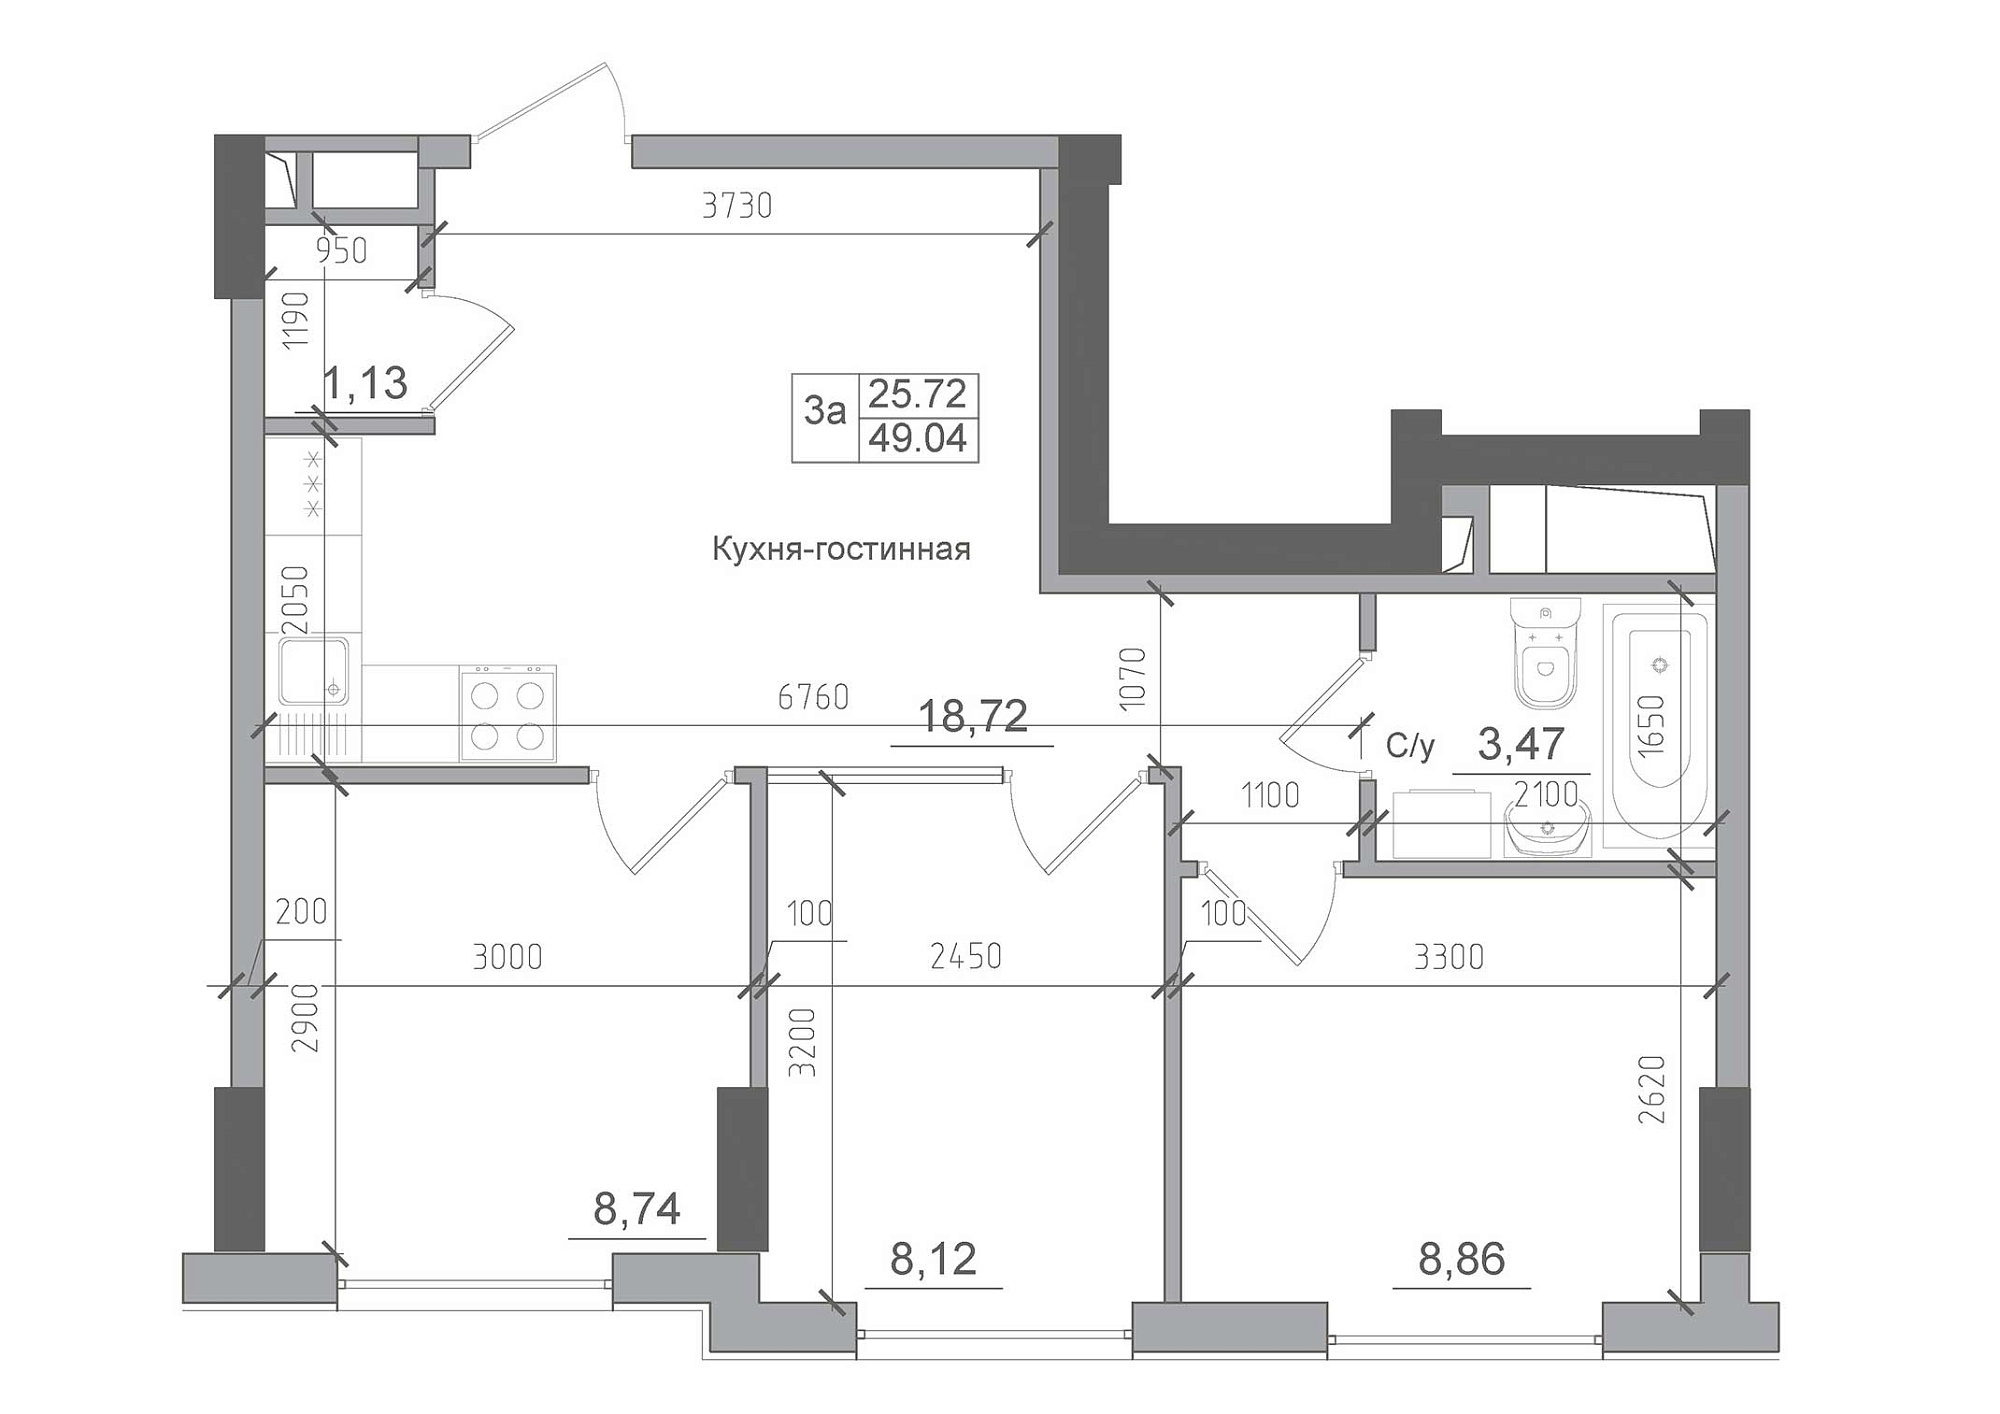 Планировка 3-к квартира площей 49.04м2, AB-22-12/00007.